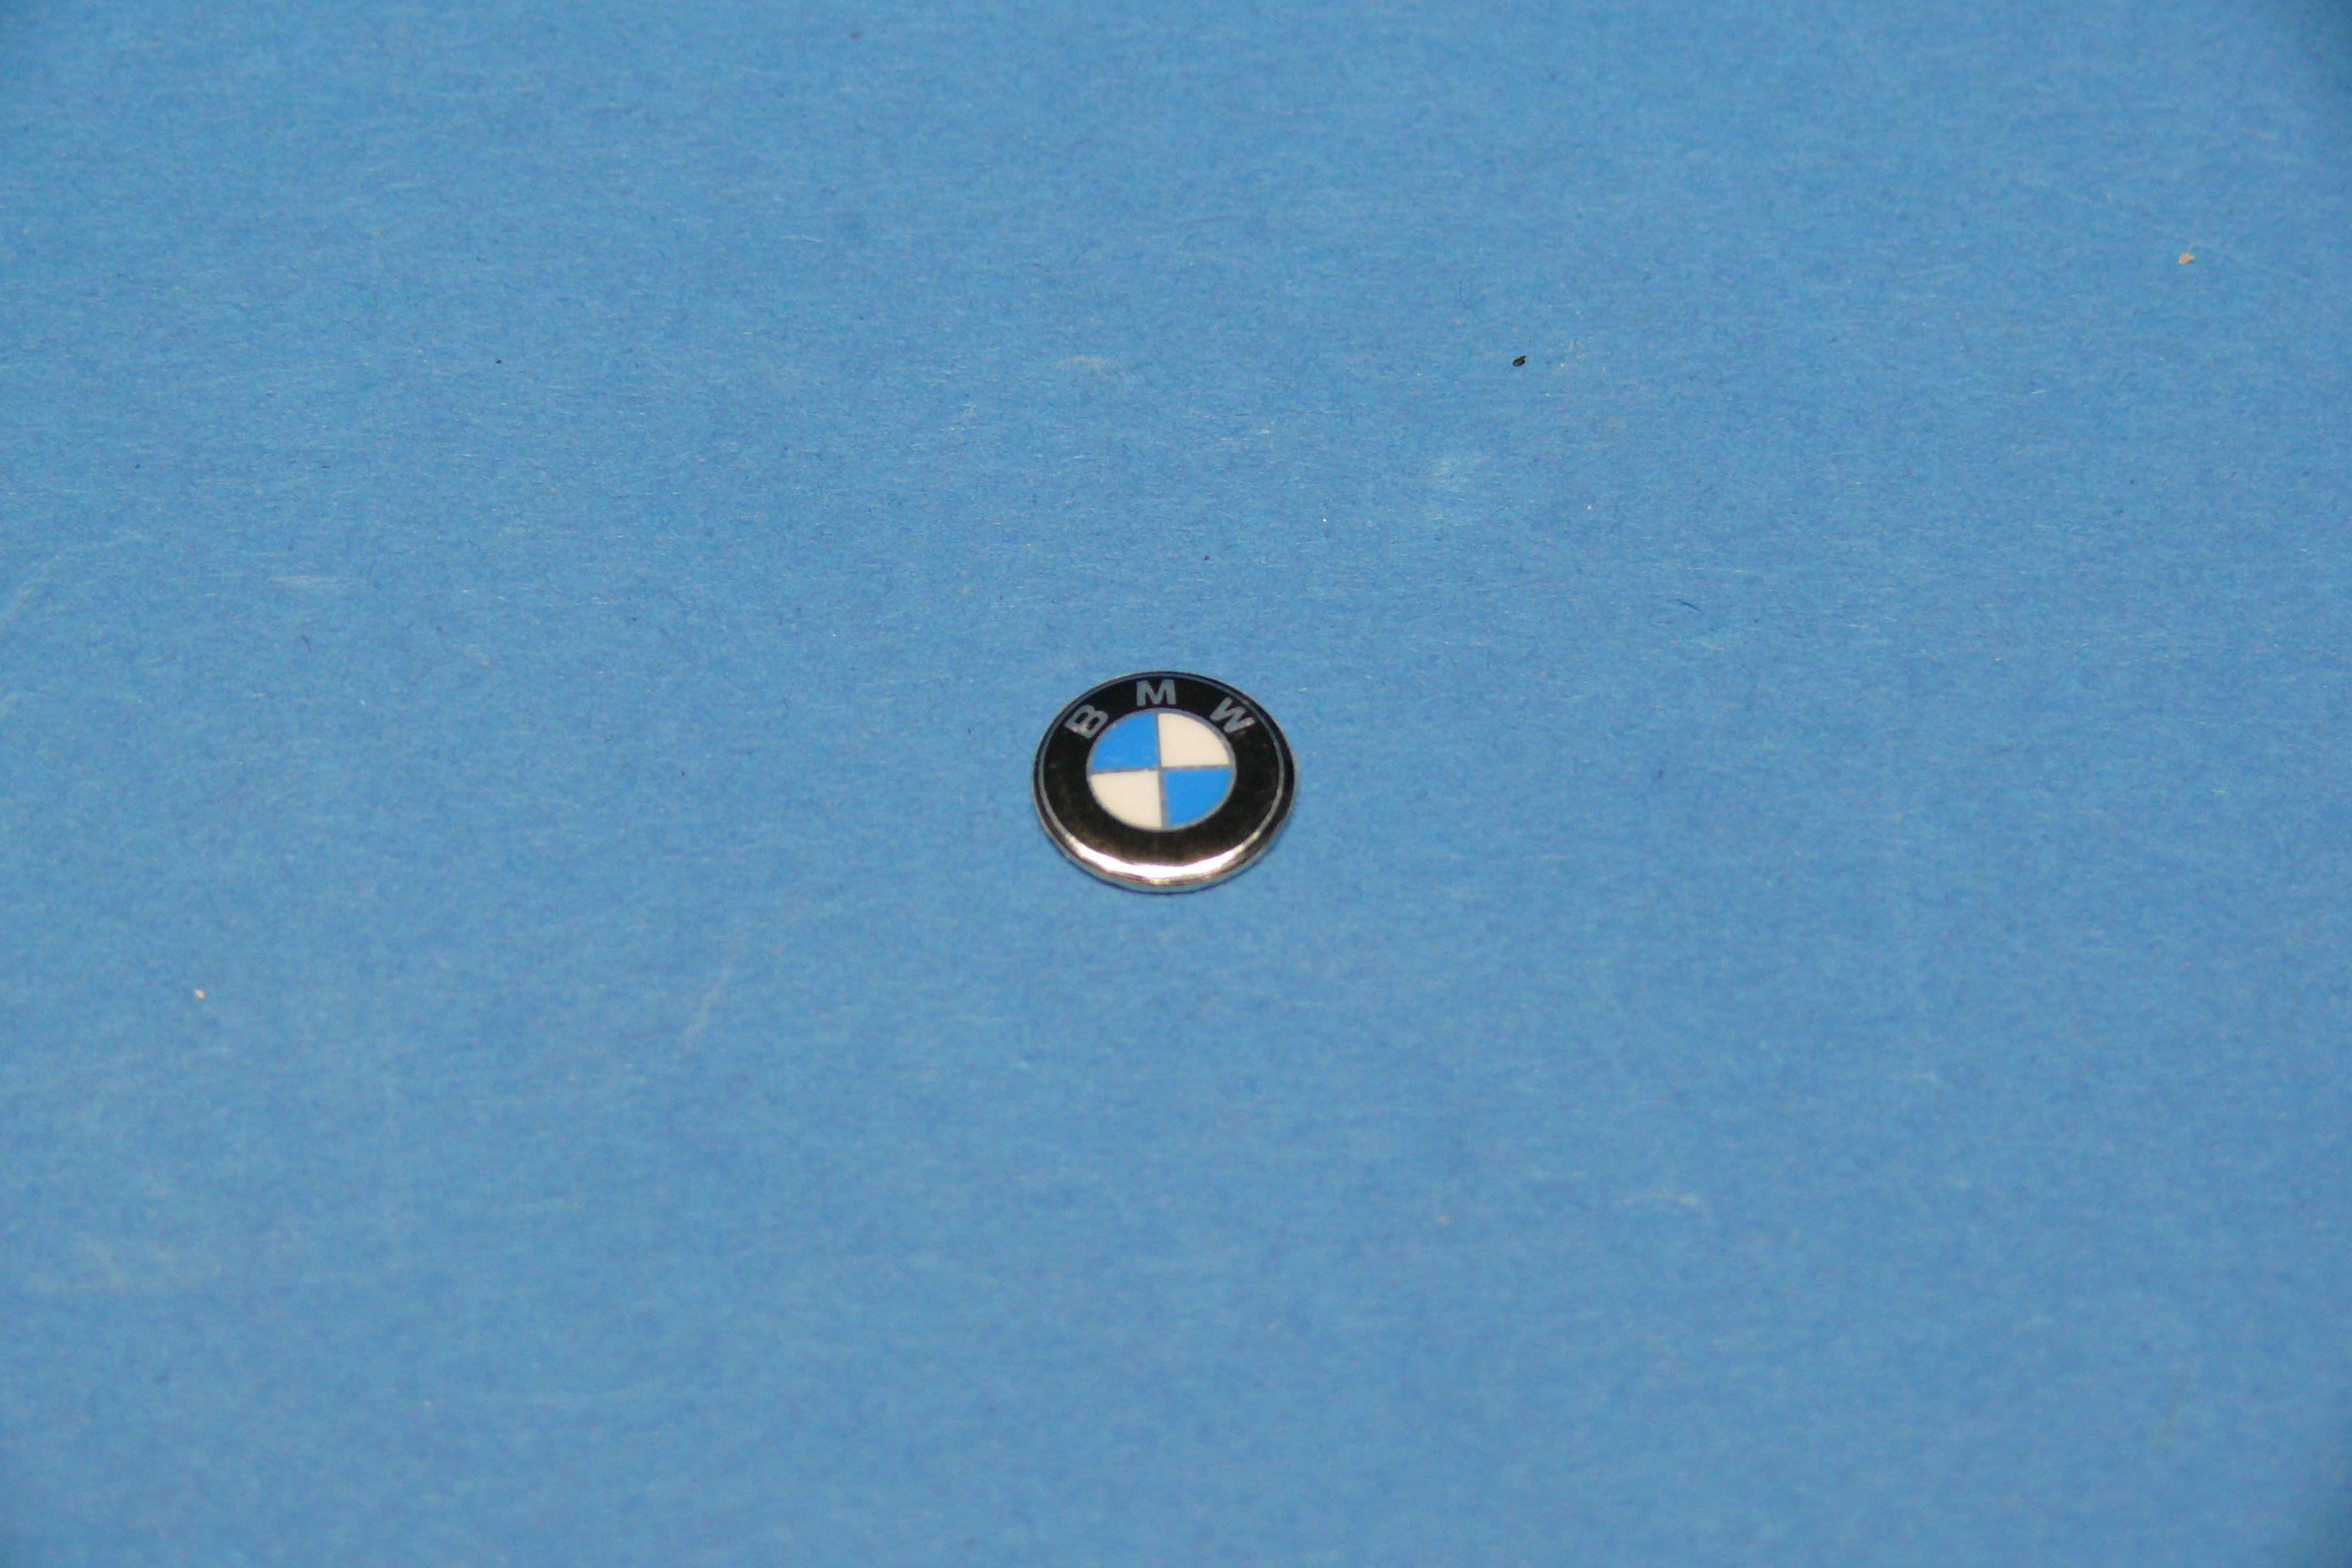 FMW Tuning & Autoteile - BMW Emblem für Schlüssel (11mm) BMW 1er